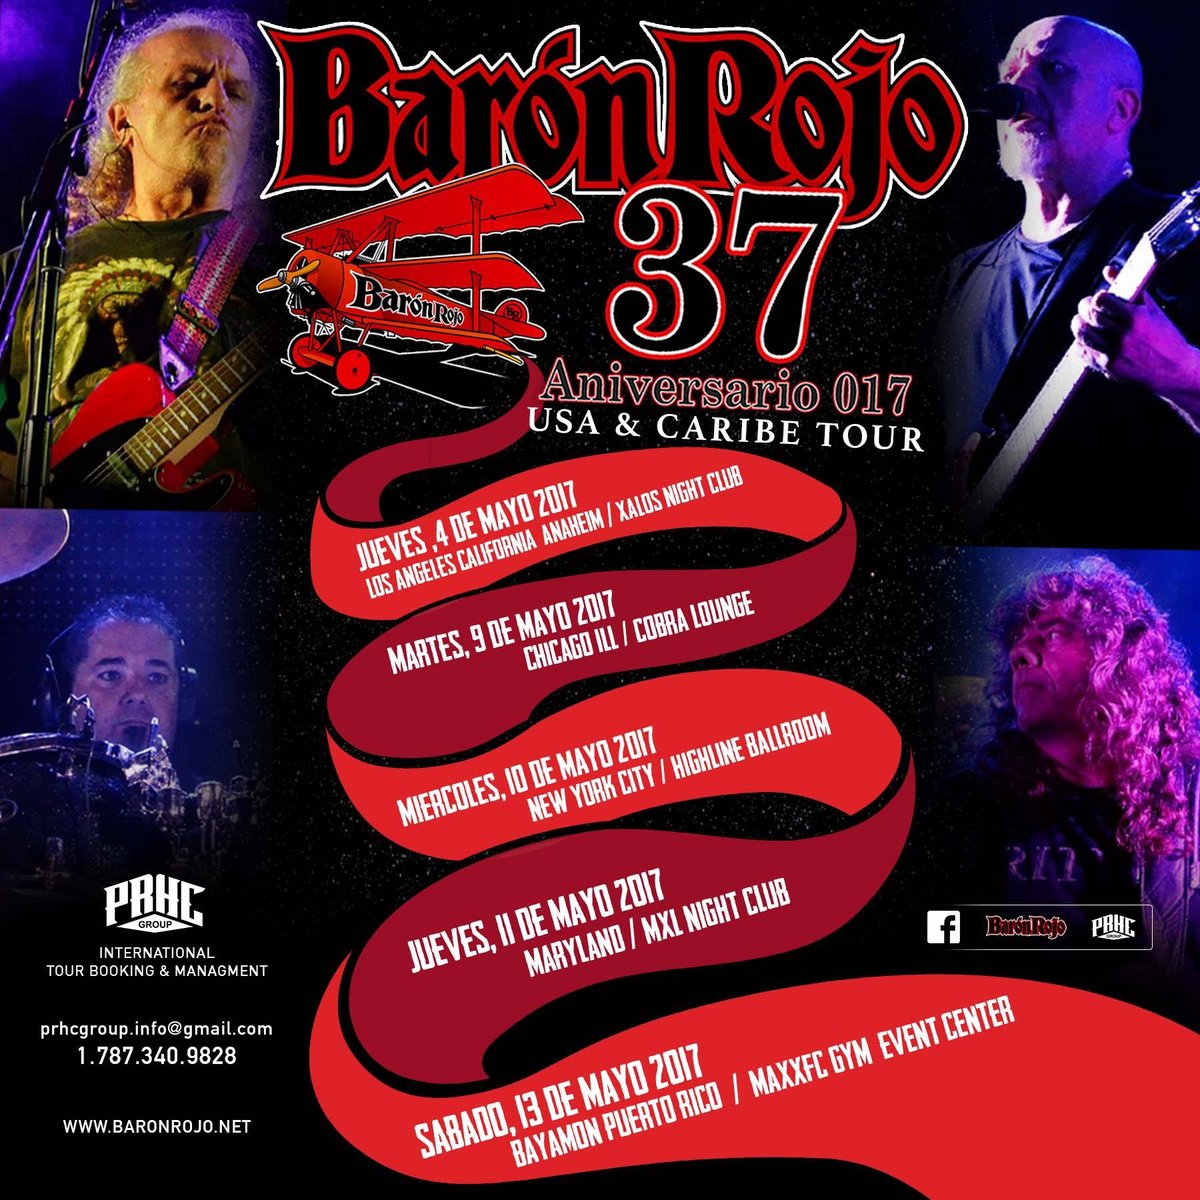 Image of Baron Rojo 37 Aniversario USA & Caribe Tour 017